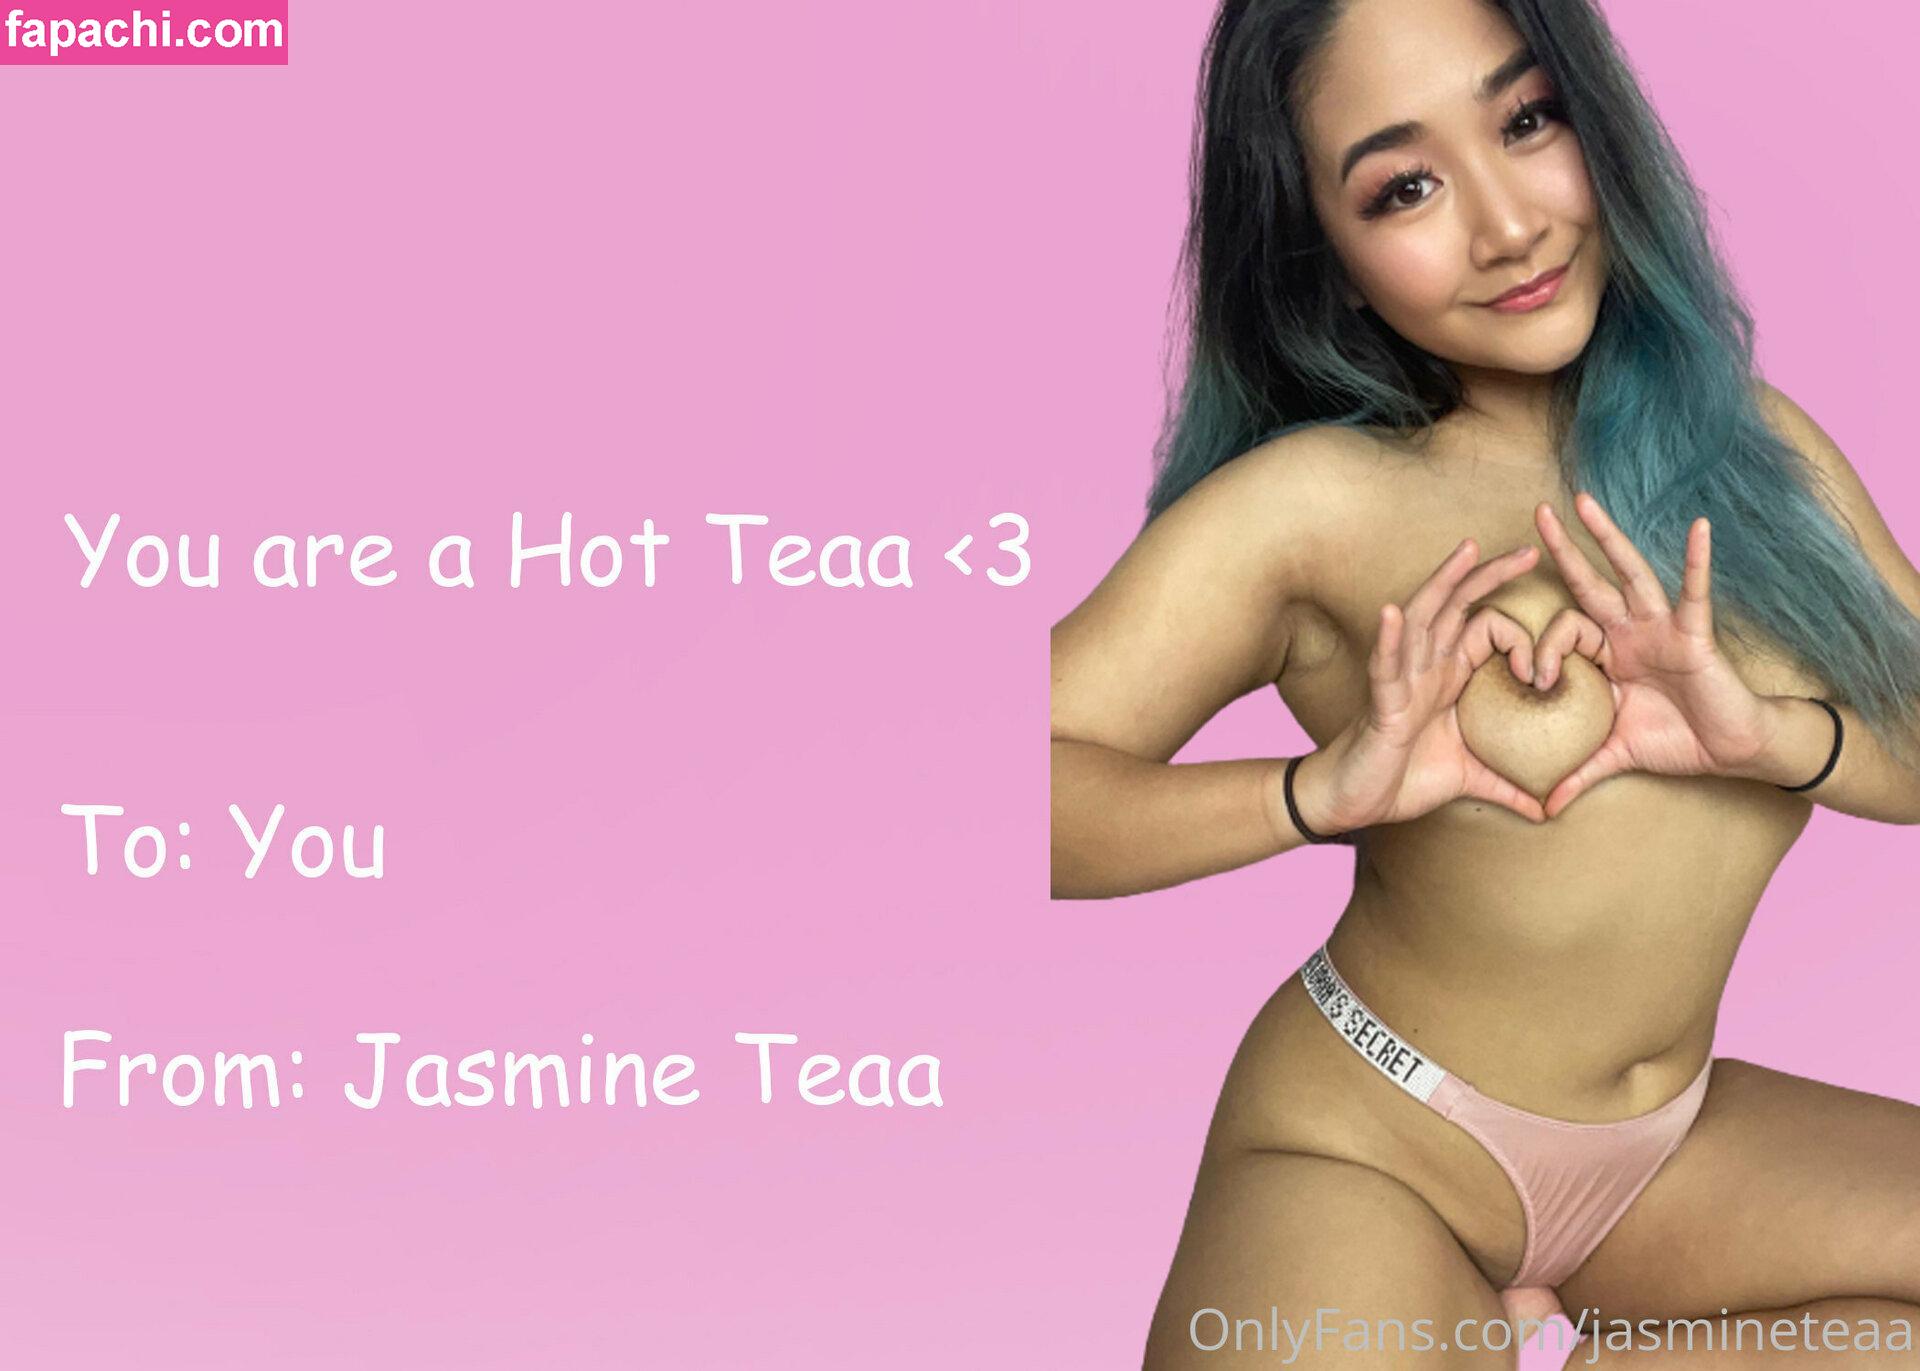 jasmineteaa / Jasmine Teaa / jasteaa / xxmilky_teaa leaked nude photo #0126 from OnlyFans/Patreon